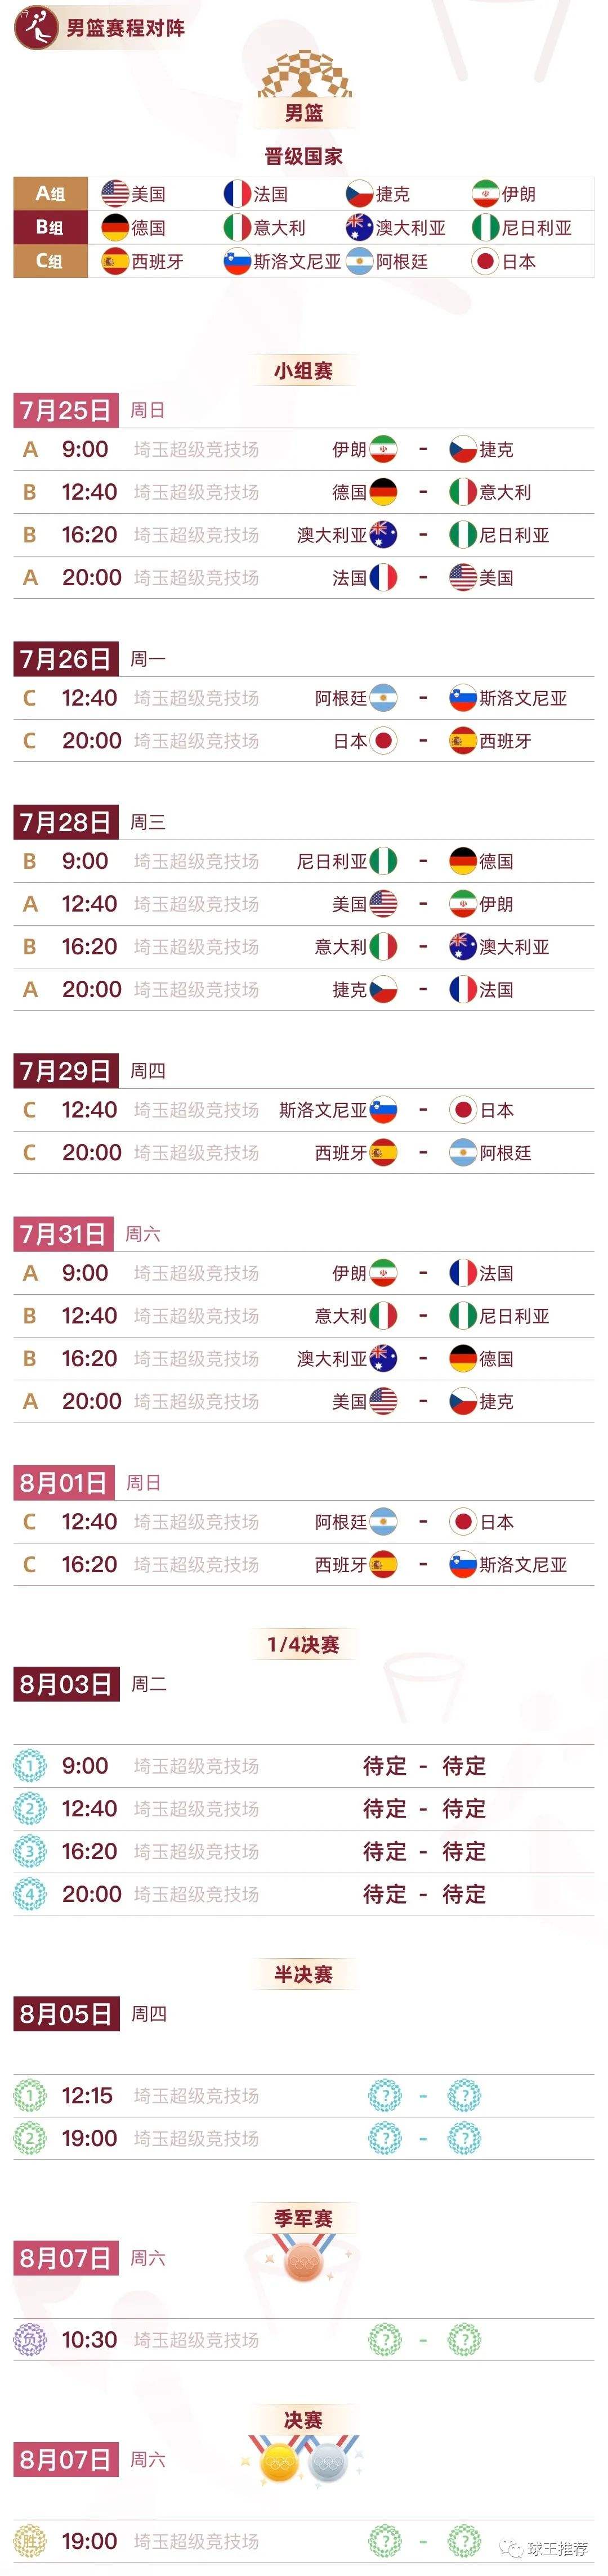 奥运会女足赛程 - 先看奥运会女足赛程时间表